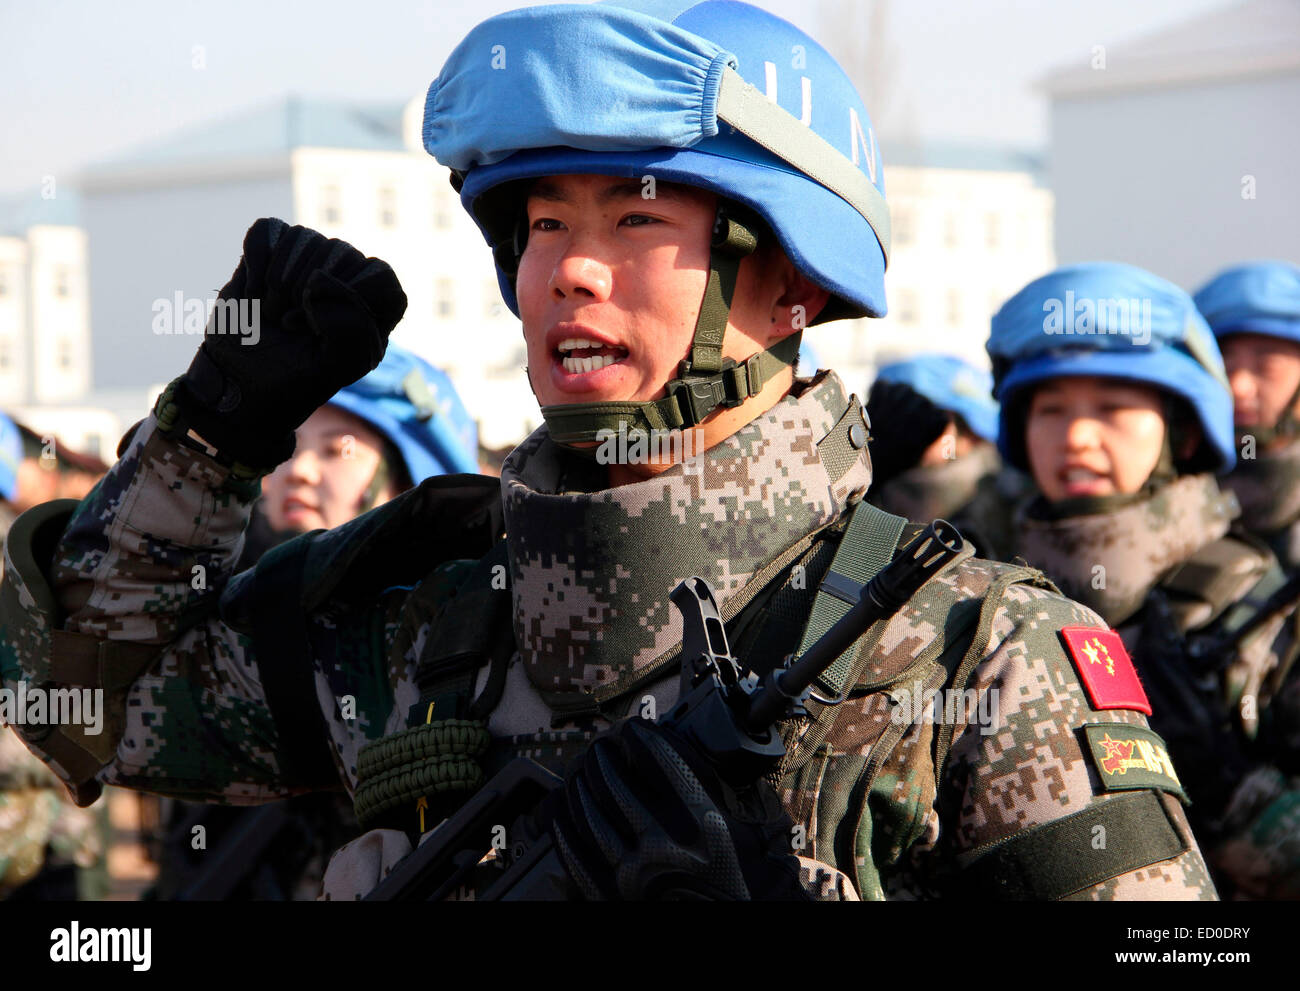 Laiyang, Shandong, China. 22 Dec, 2014. Chino primer batallón de infantería de mantenimiento de la paz va a ir al sur de Sudán para la misión de mantenimiento de la paz en Laiyang, Shandong, China el 22 de diciembre de 2014. Crédito: TopPhoto/Alamy Live News Foto de stock